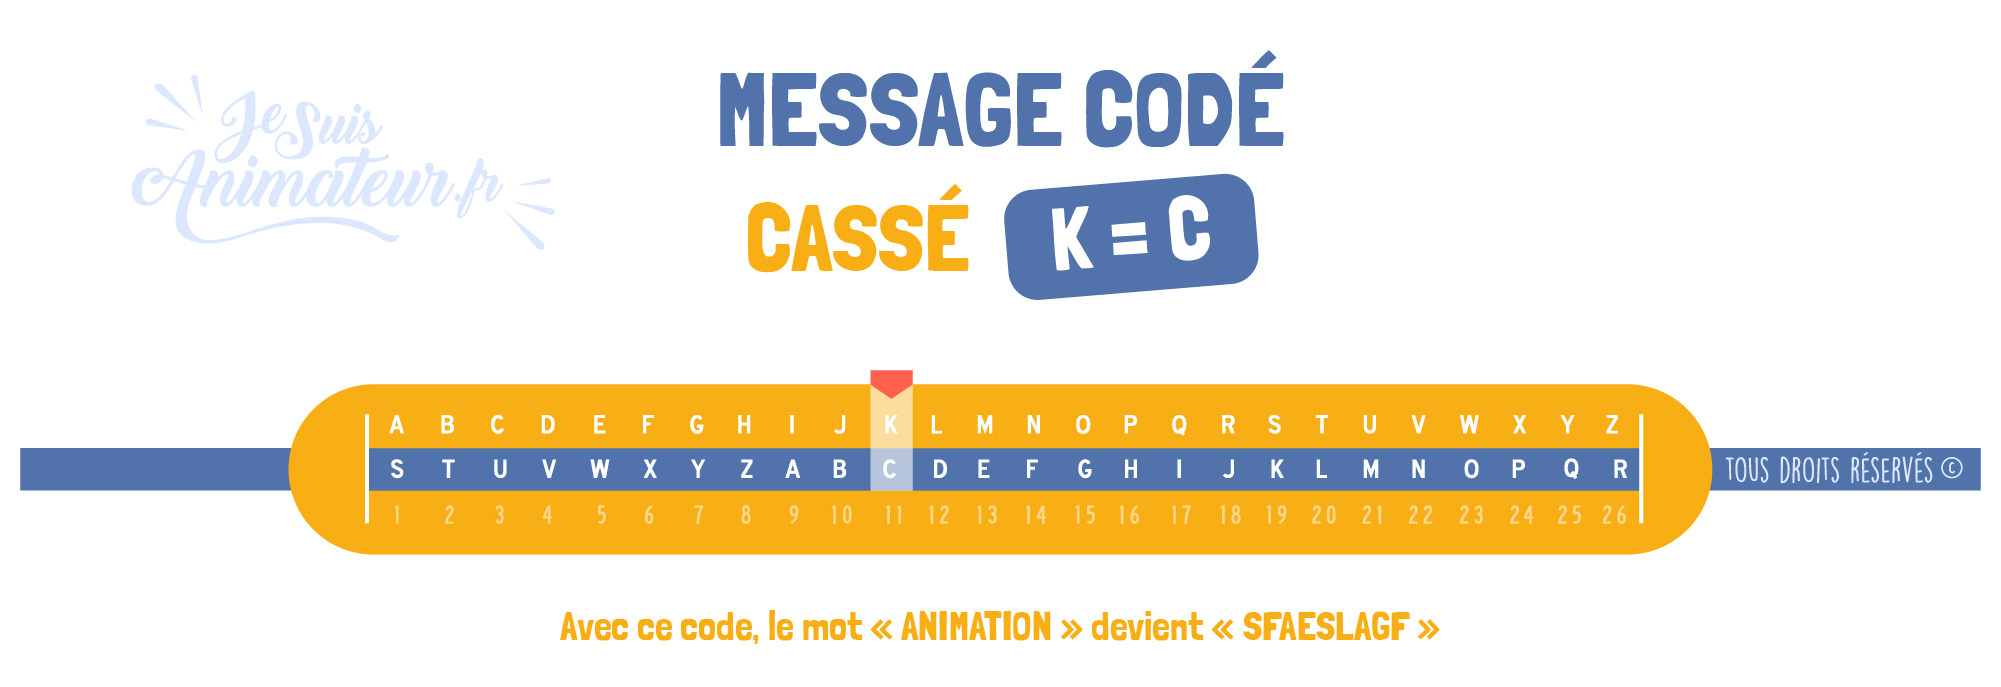 Message codé « Cassé » (K = C)